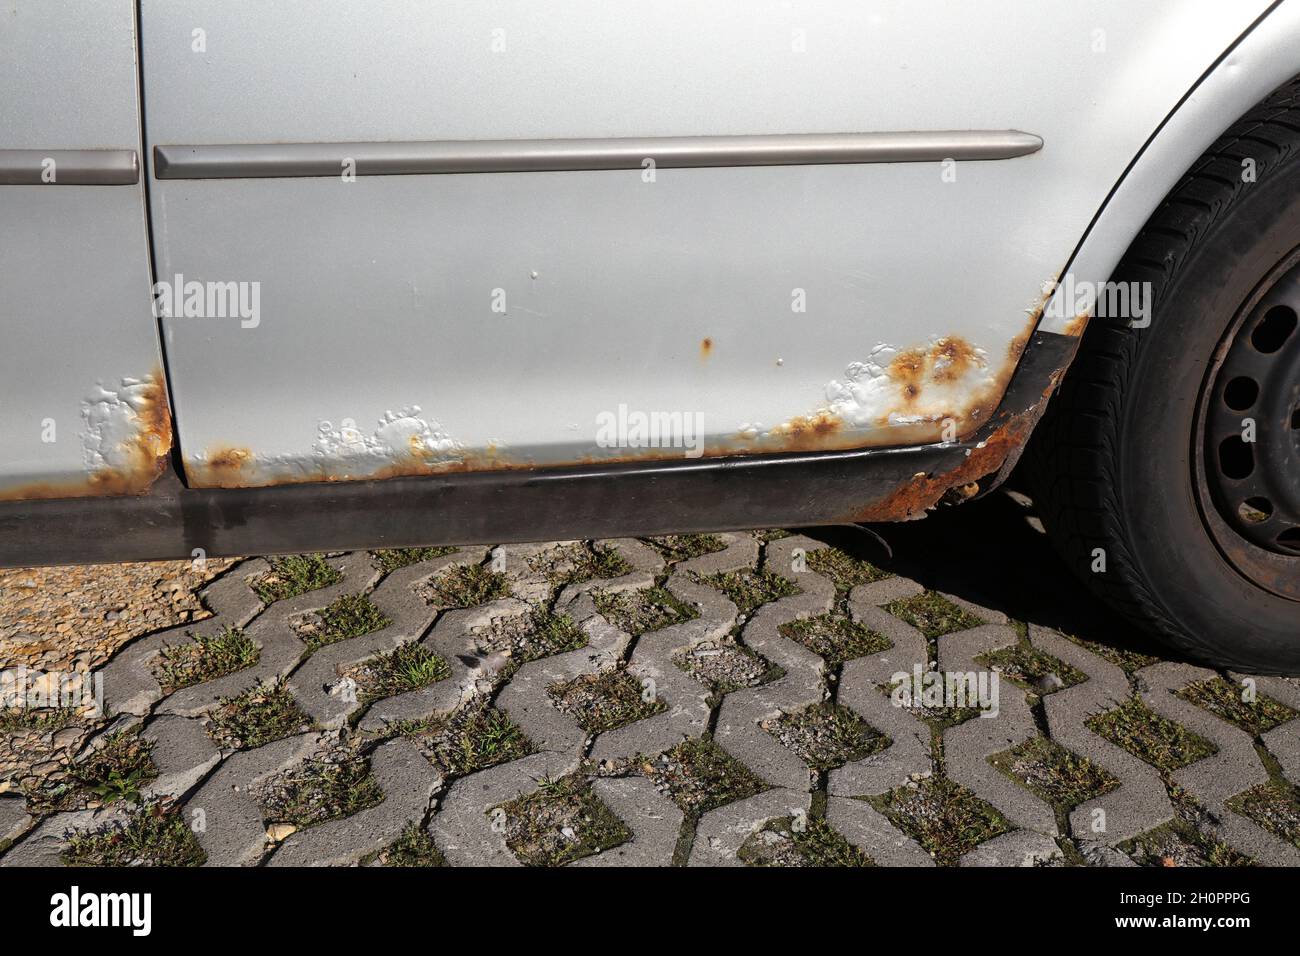 Rostige Türschwelle in einem alten Auto. Wetterschäden im Fahrzeug  Stockfotografie - Alamy